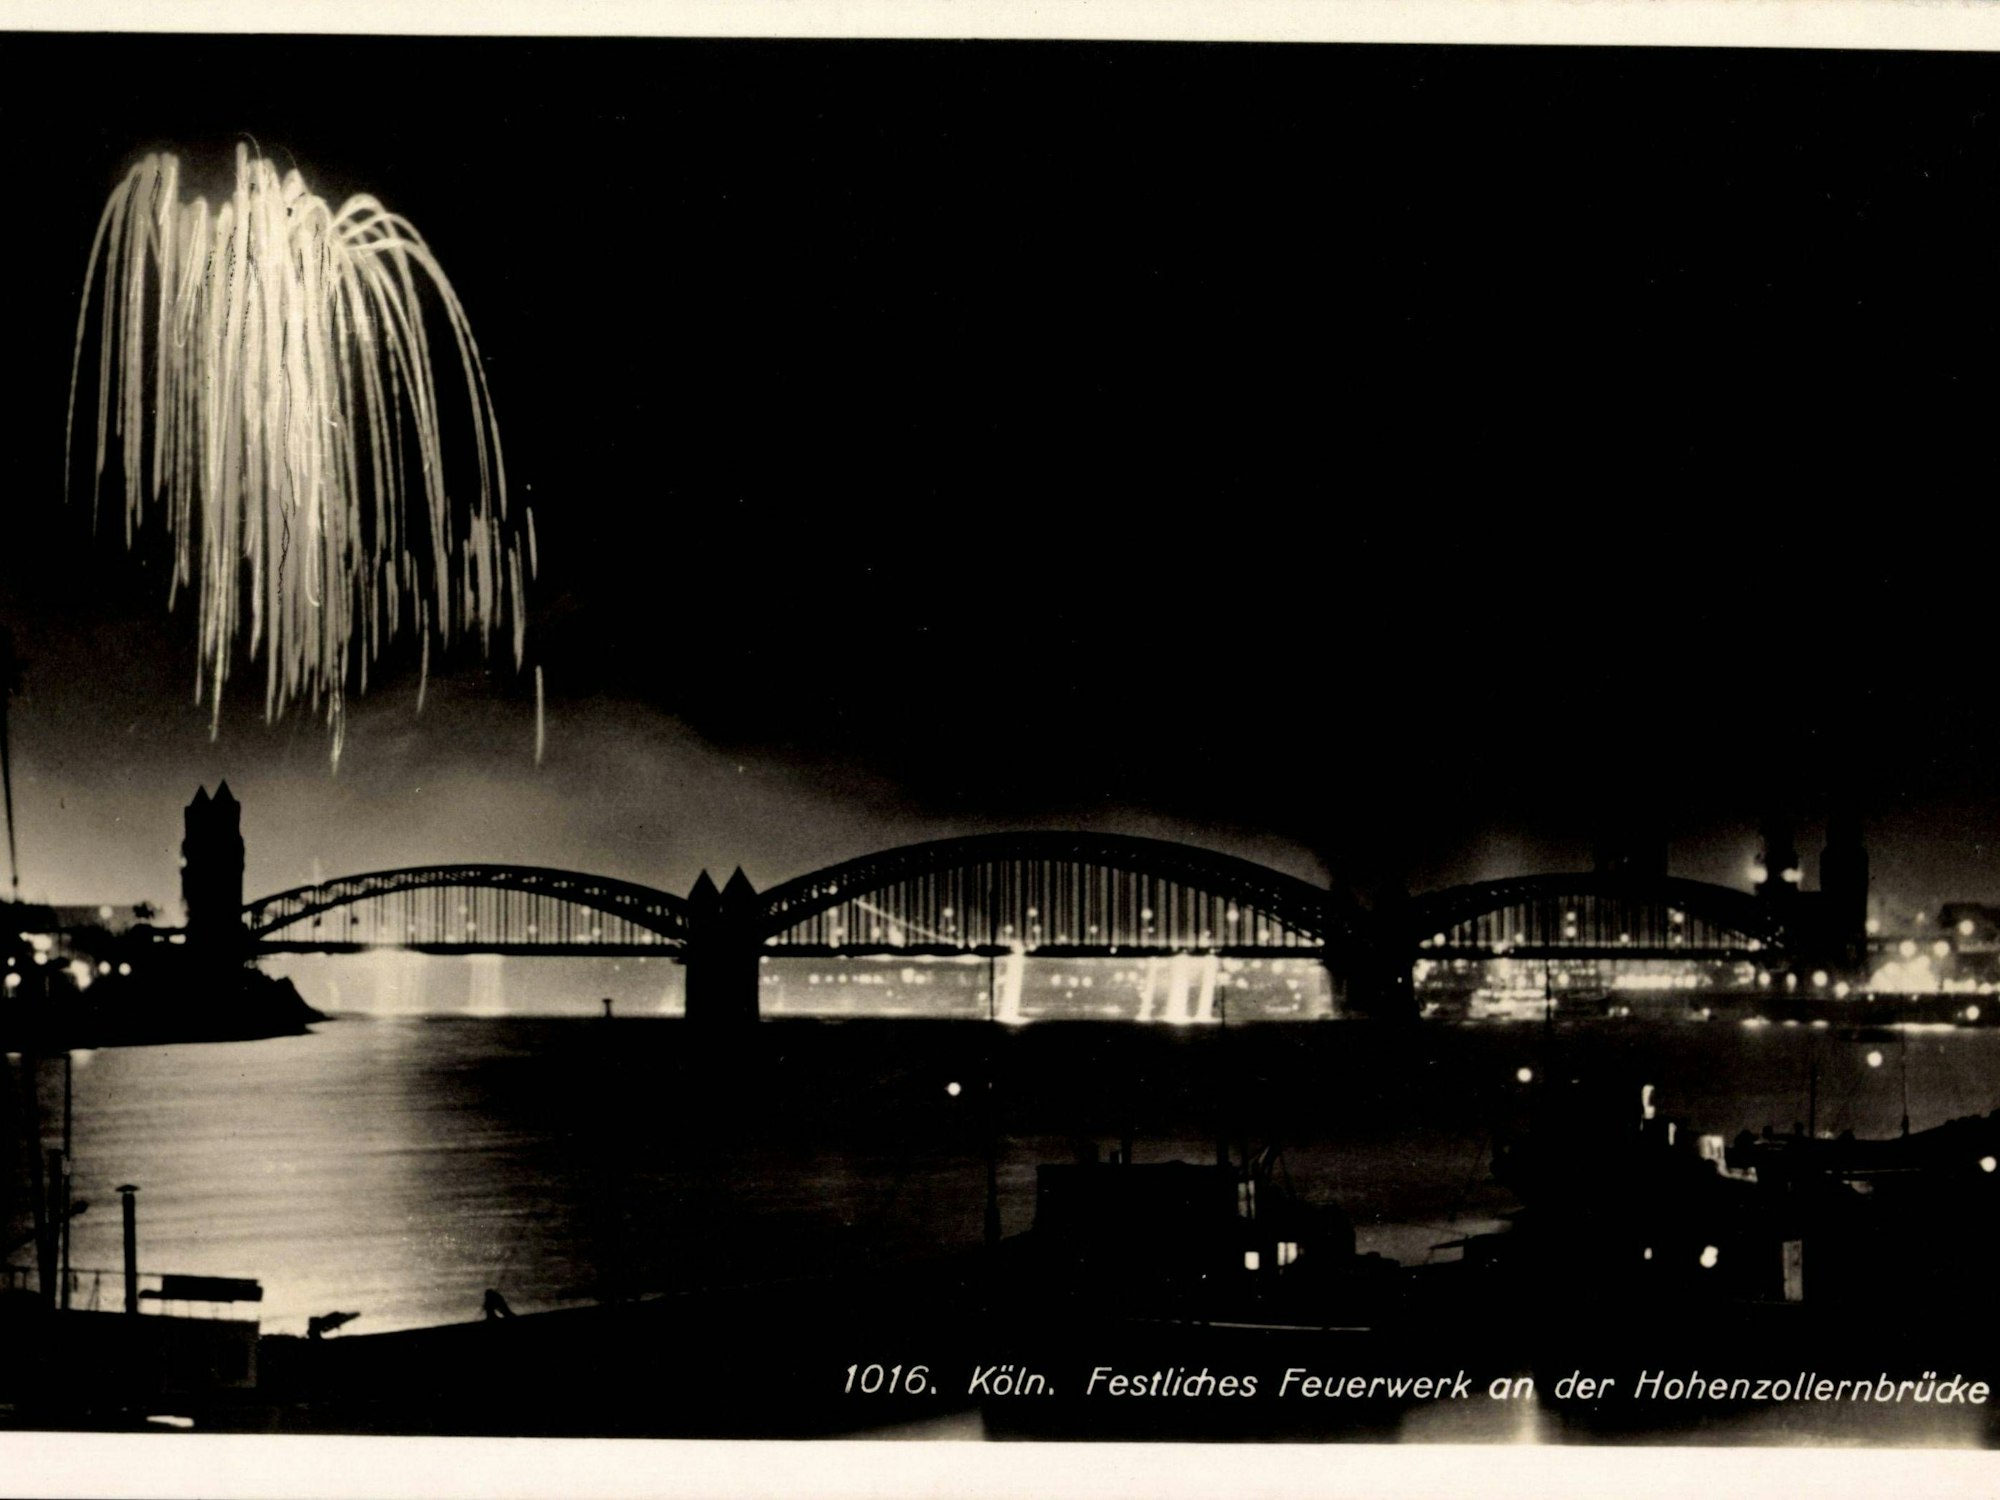 Feuerwerk an der Hohenzollernbrücke in Köln.